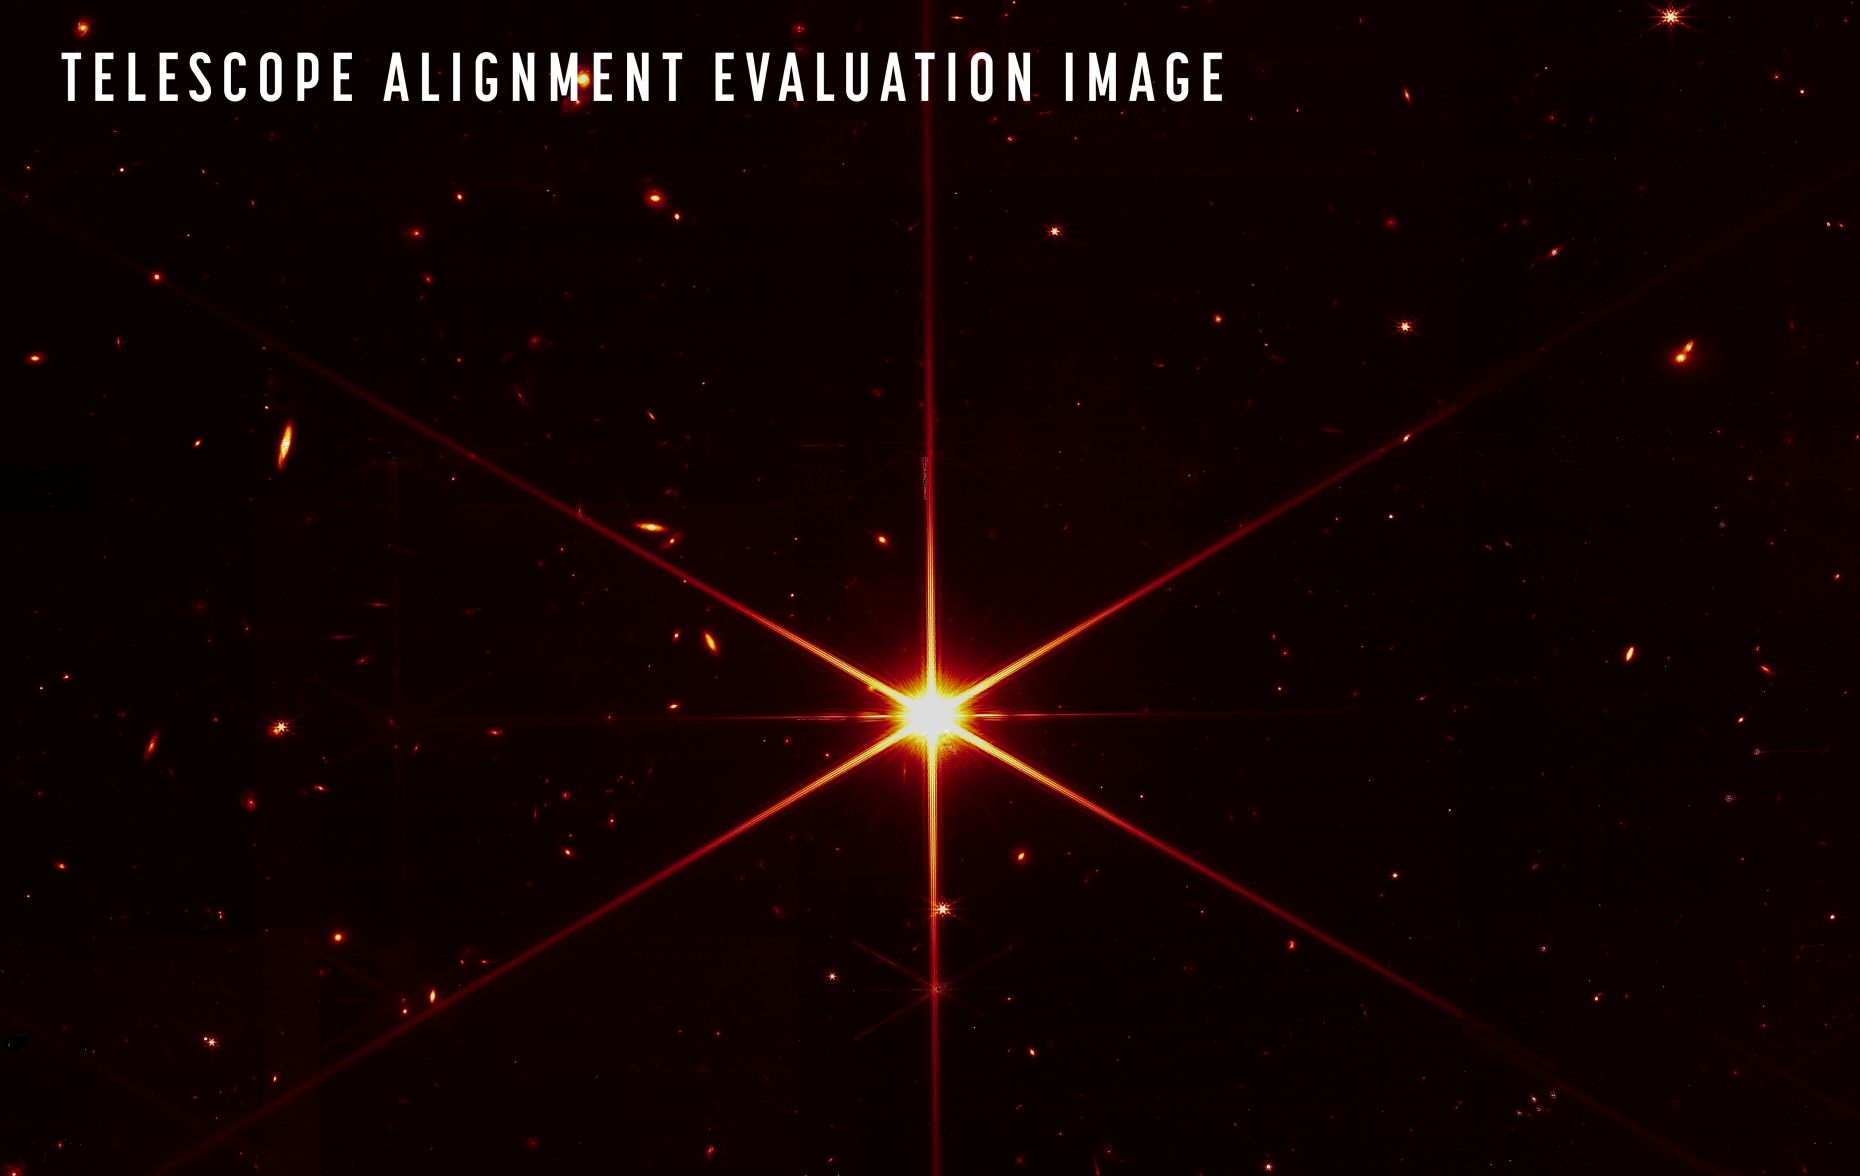 Image taken by Telescope James Webb, focusing on a single star